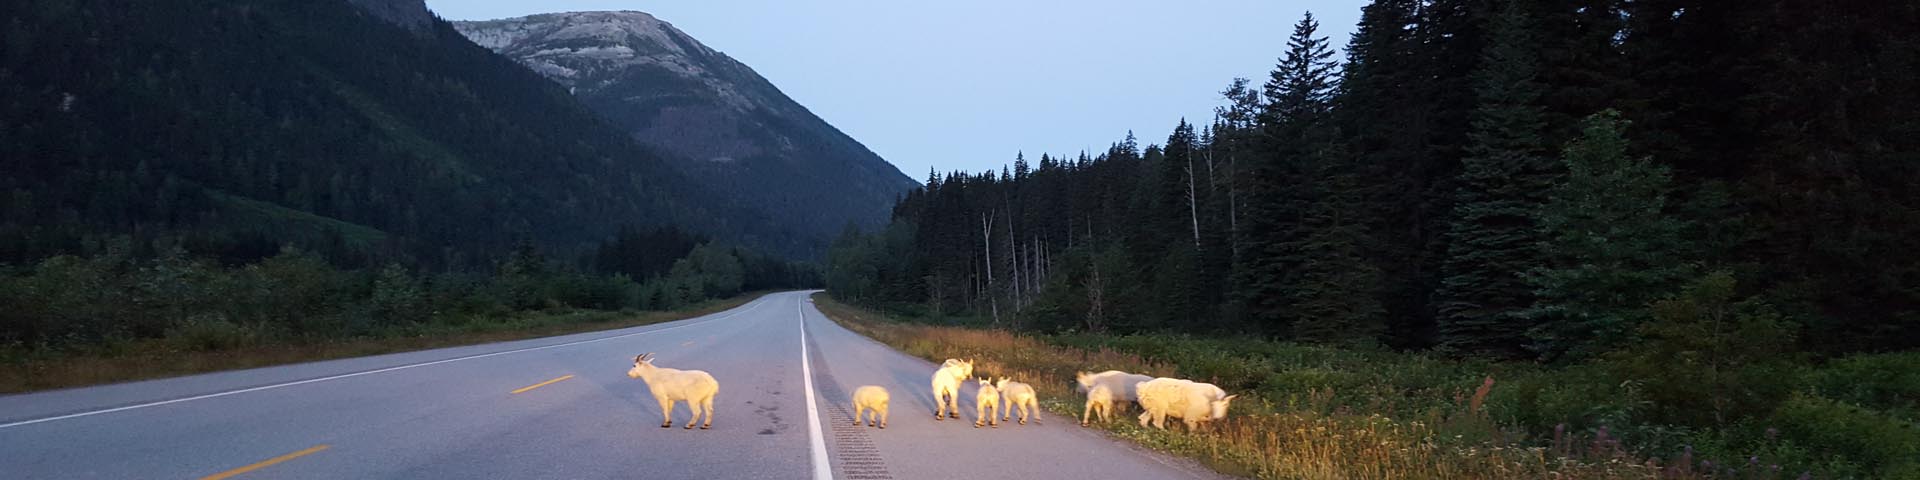 Les phares d’un véhicule stationné éclairent un troupeau de chèvres de montagne sur le côté d’une autoroute vide au crépuscule.